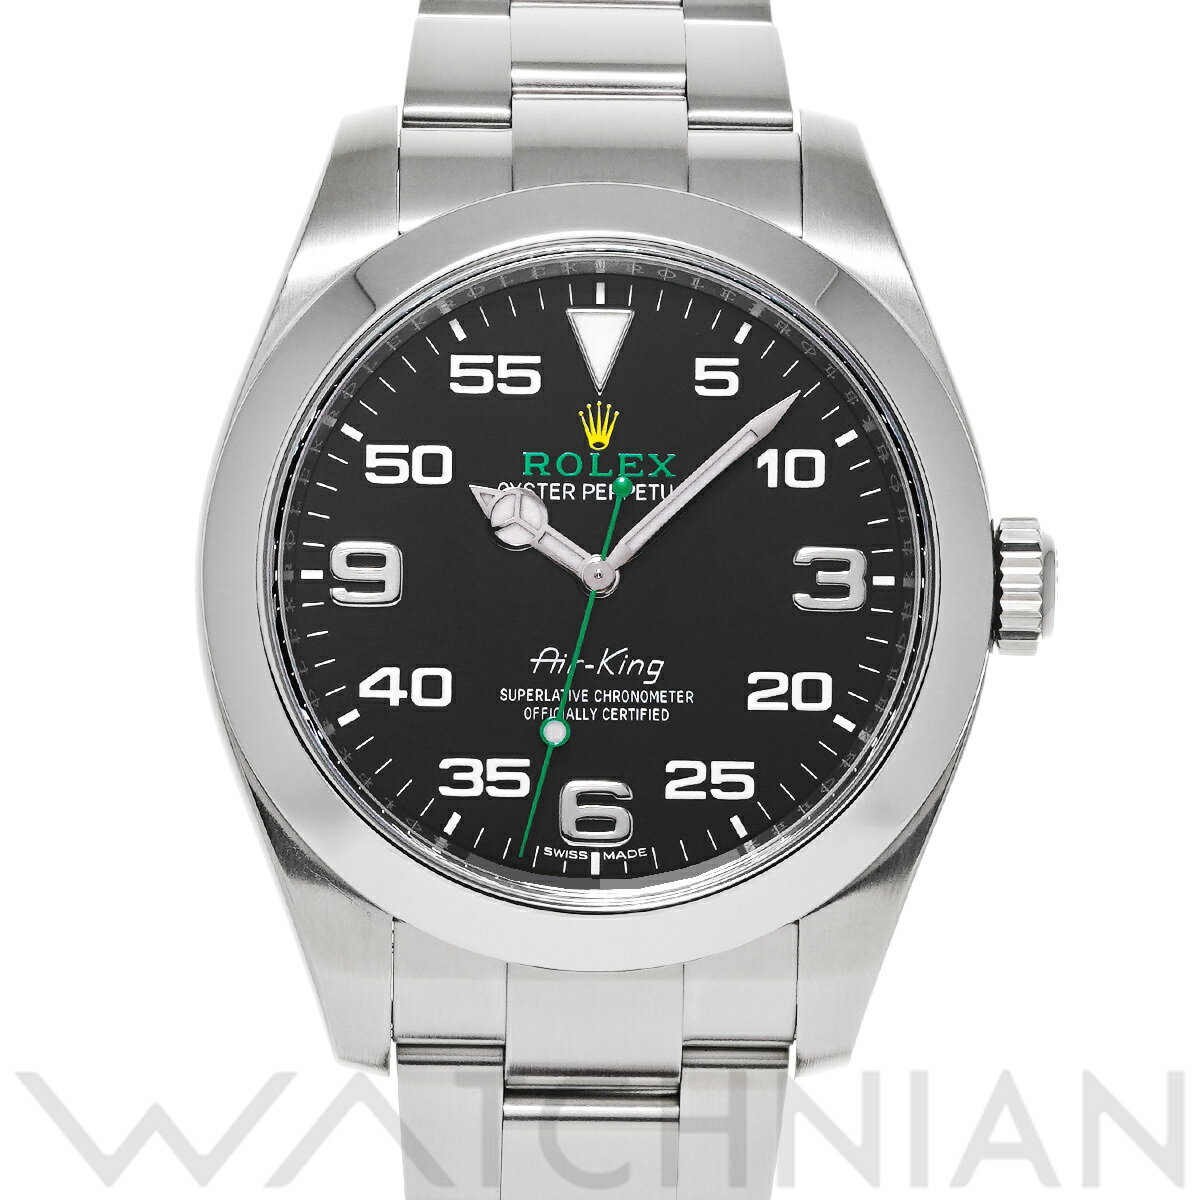 【ローン60回払い無金利】【中古】 ロレックス ROLEX エアキング 116900 ランダムシリアル ブラック メンズ 腕時計 ロレックス 時計 高級腕時計 ブランド